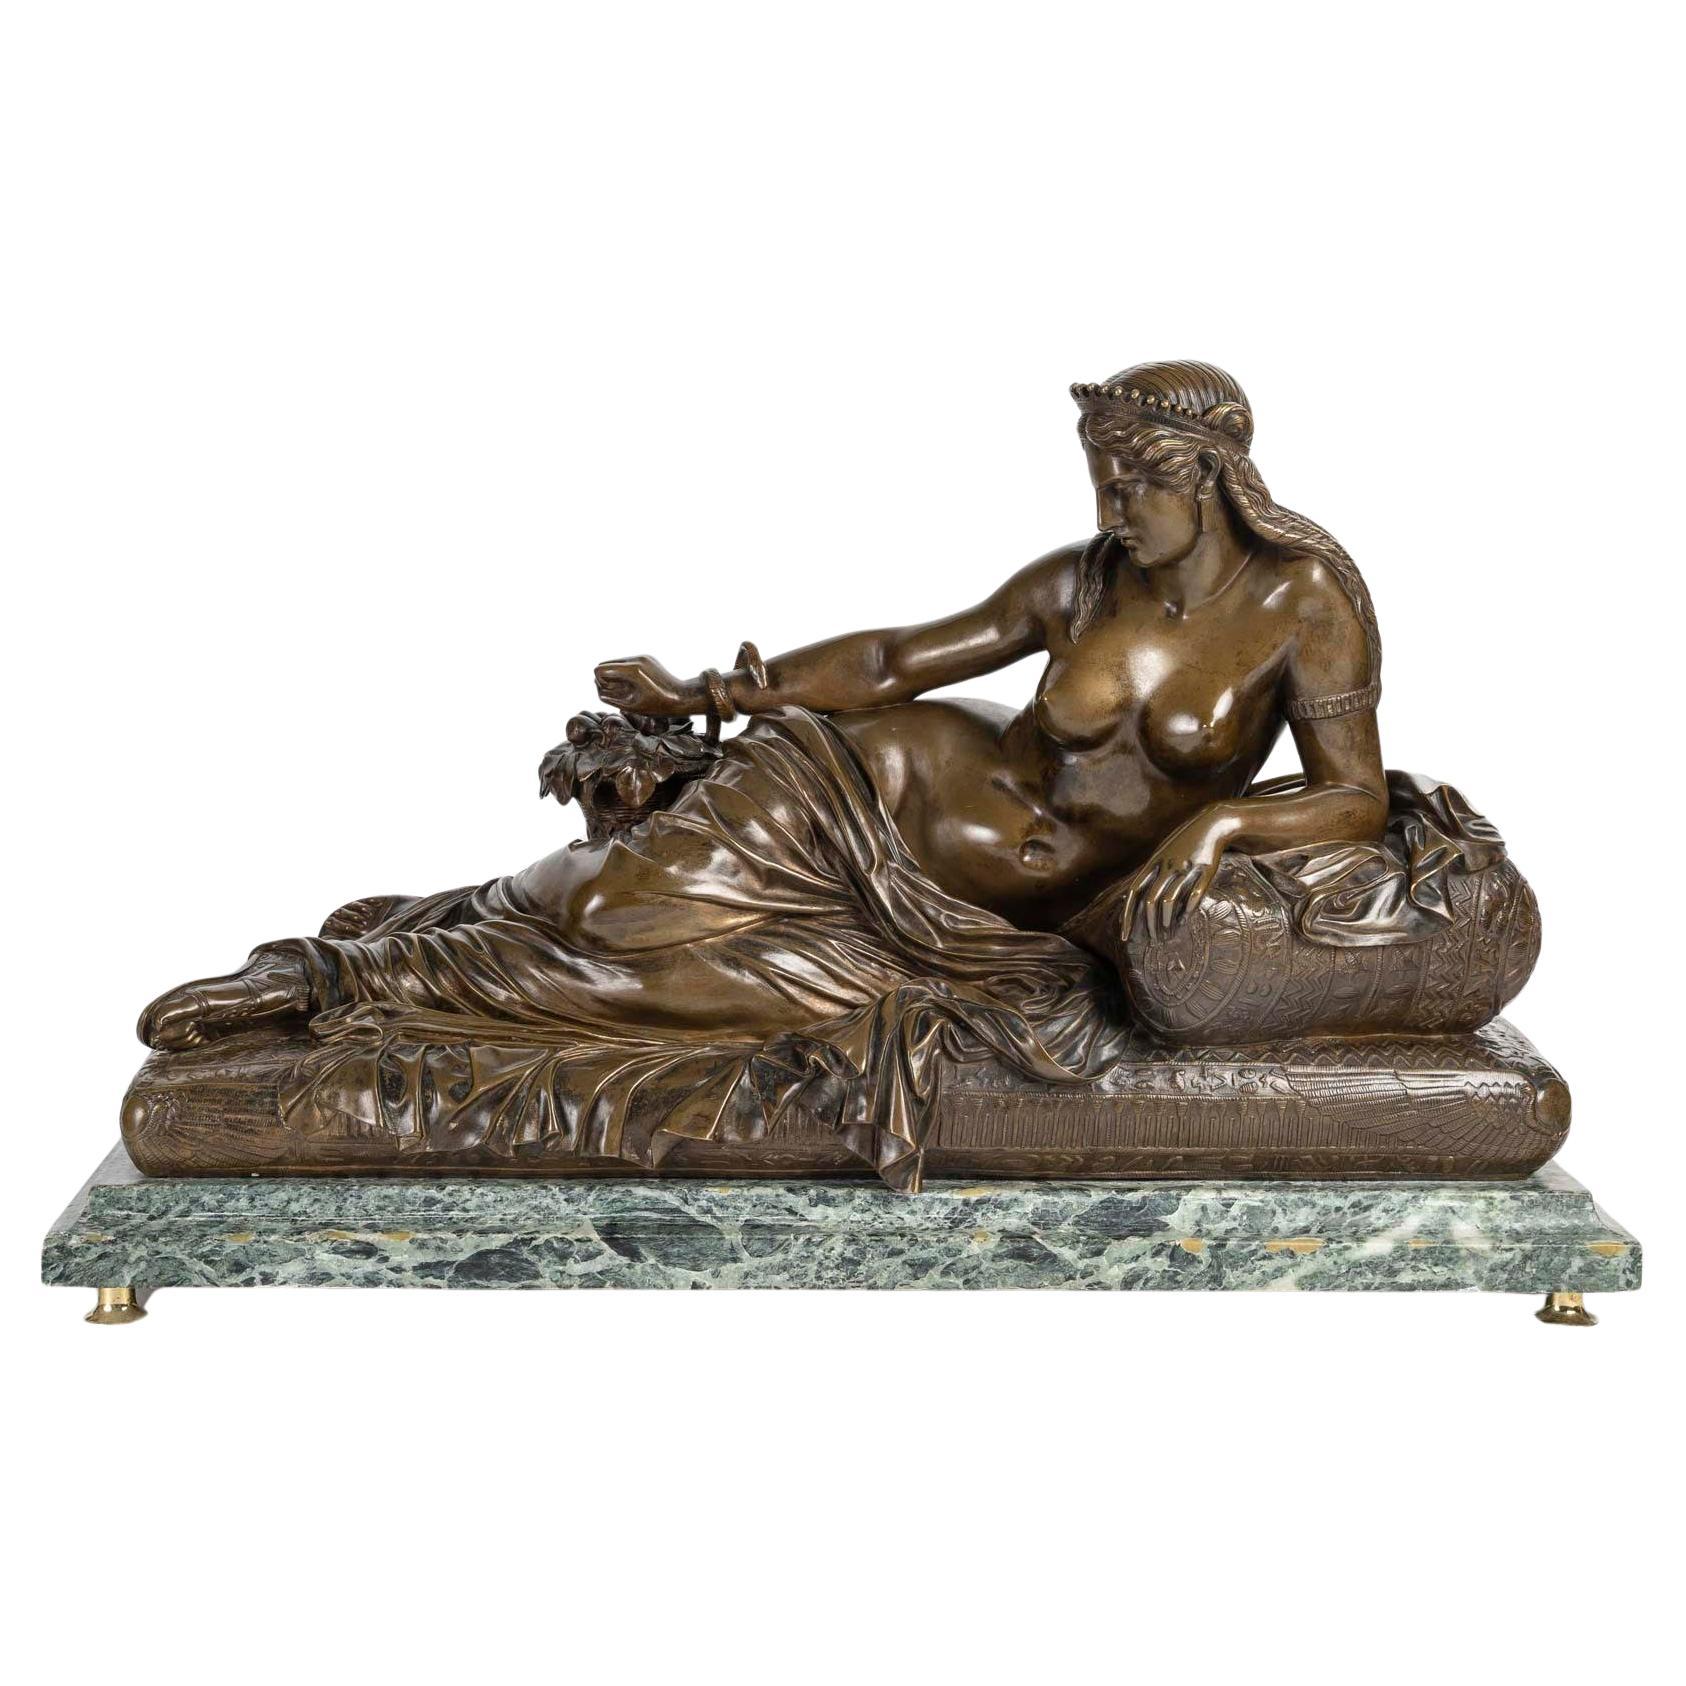 Sculpture de Cléopâtre couchée, sculpture signée Barbedienne, période Napoléon